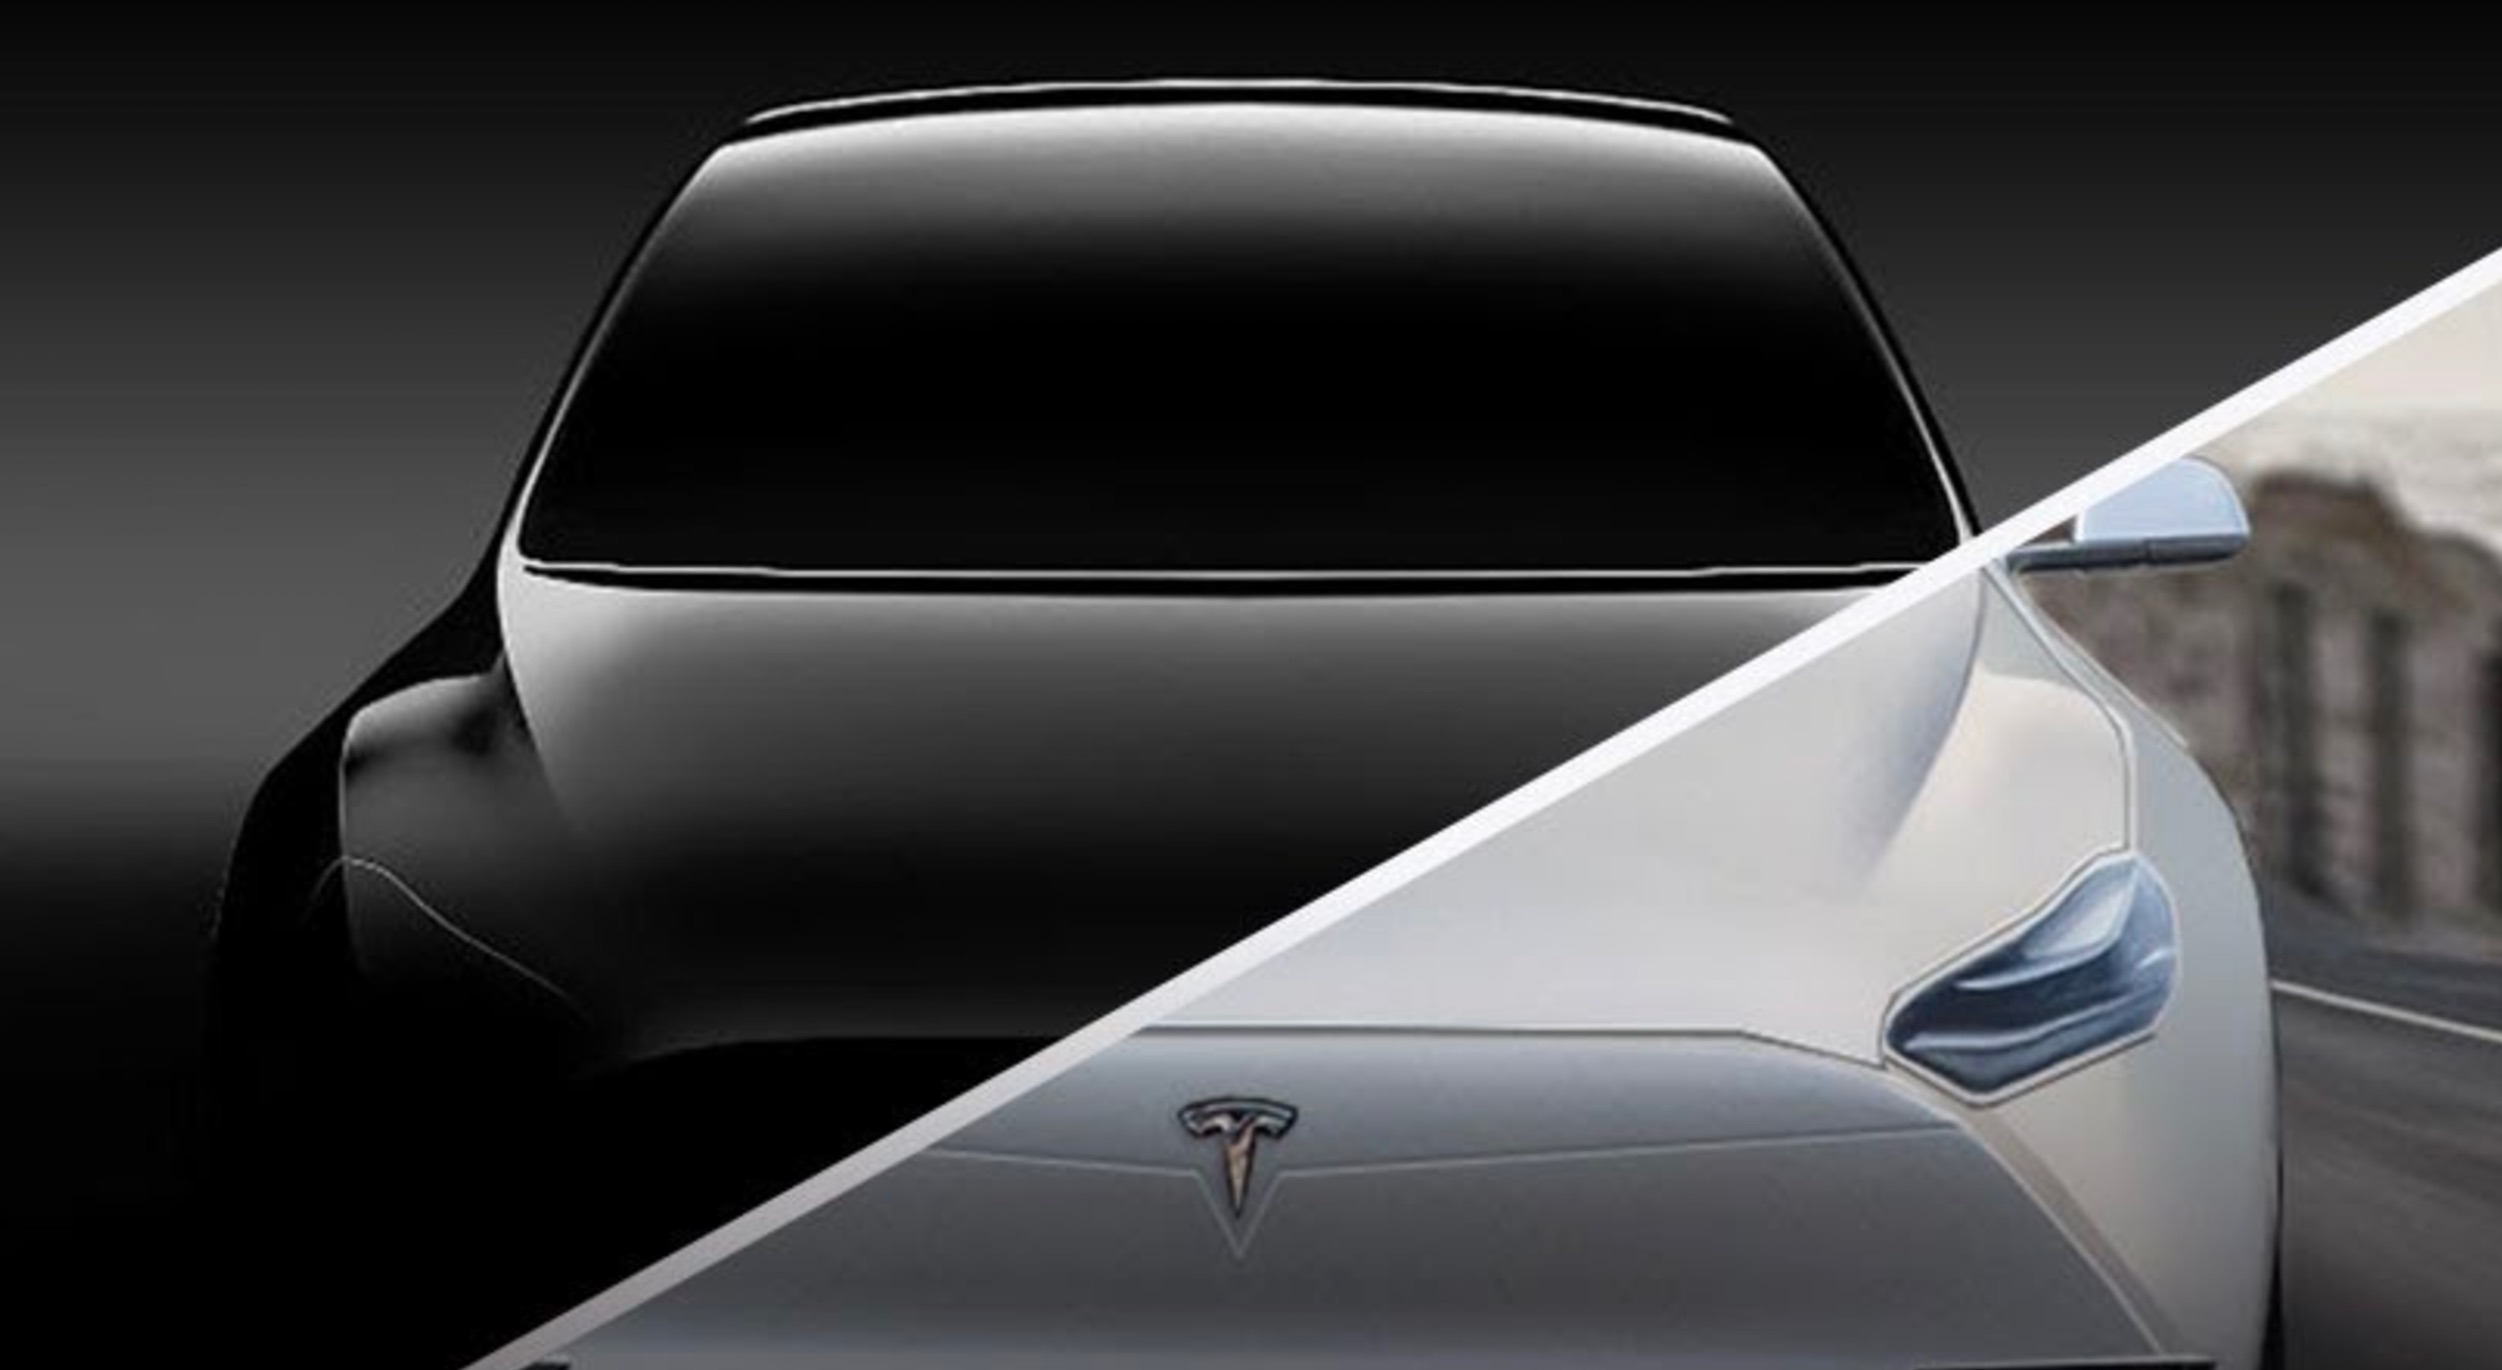 Çin’de Üretilen Tesla Ocak Ayında Piyasaya Sunulacak